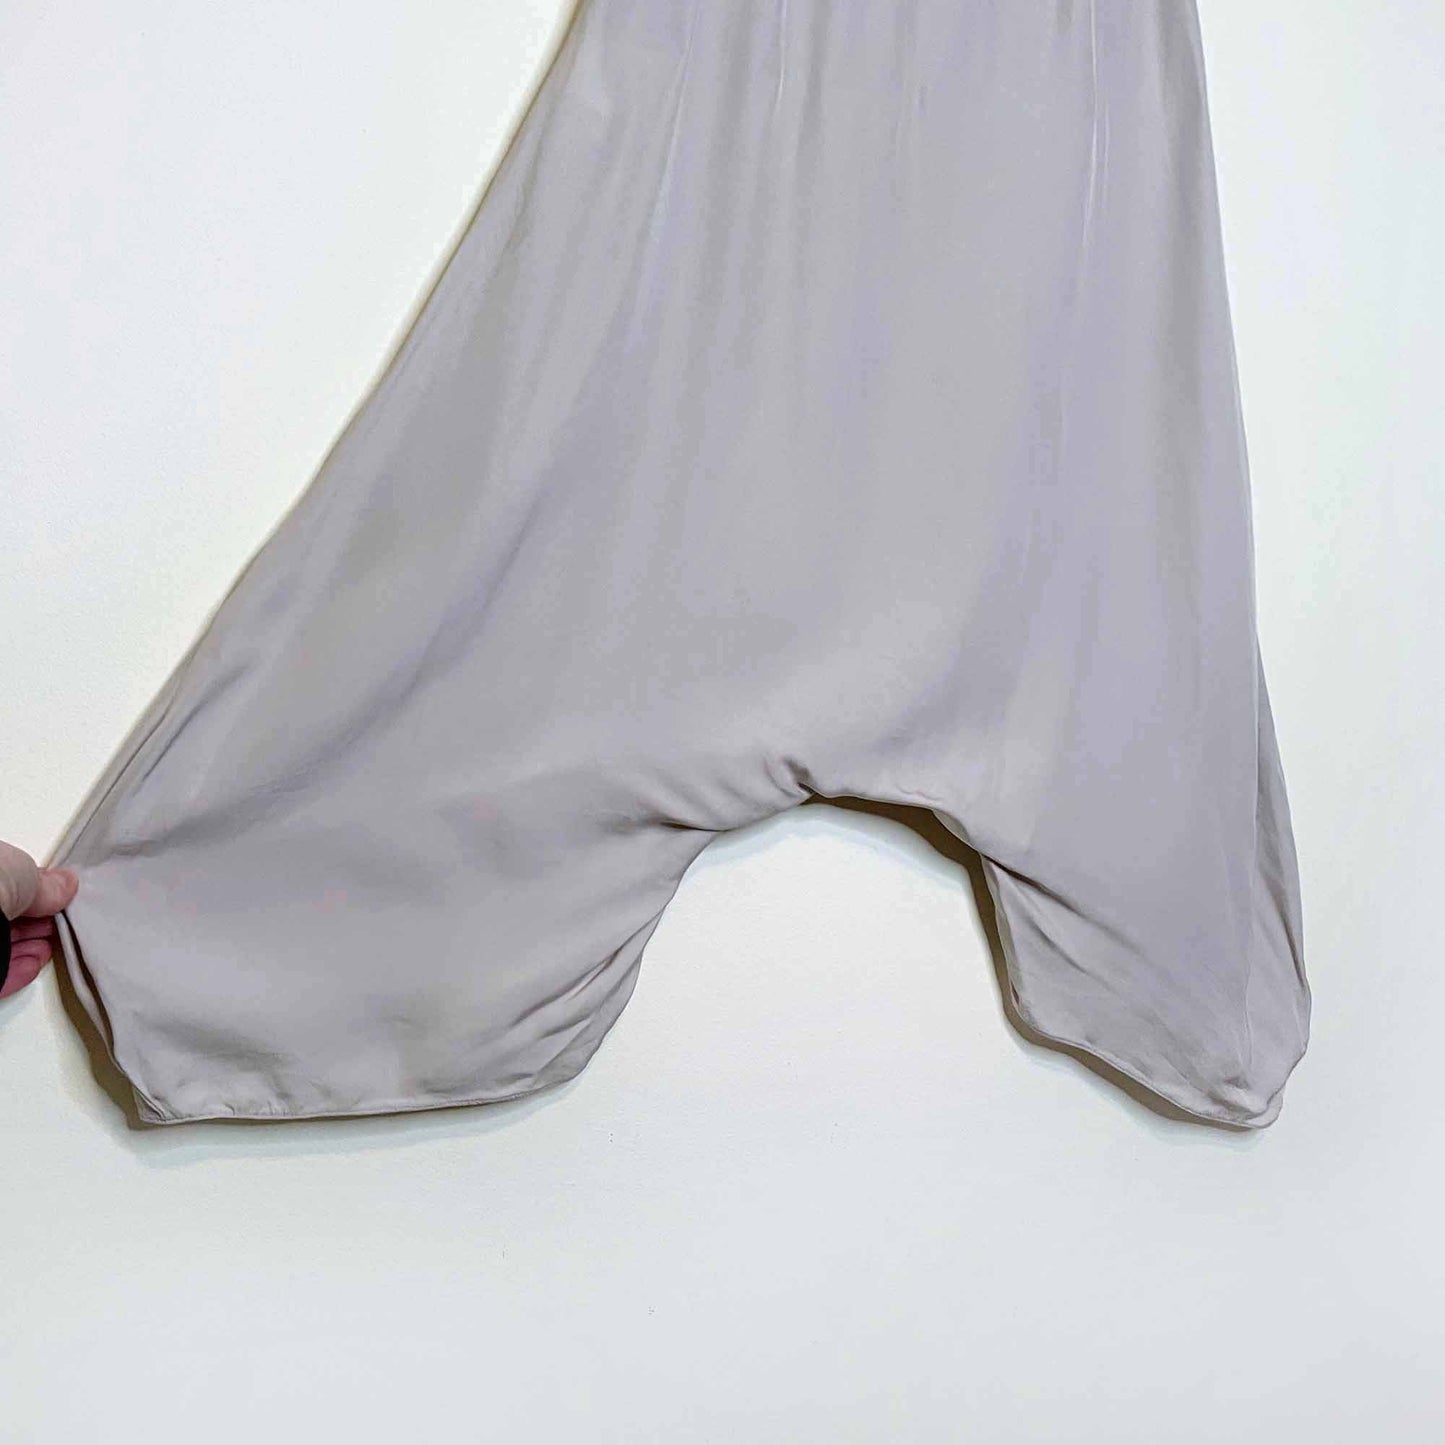 yves saint laurent 2009 cream silk harem pants - size 38